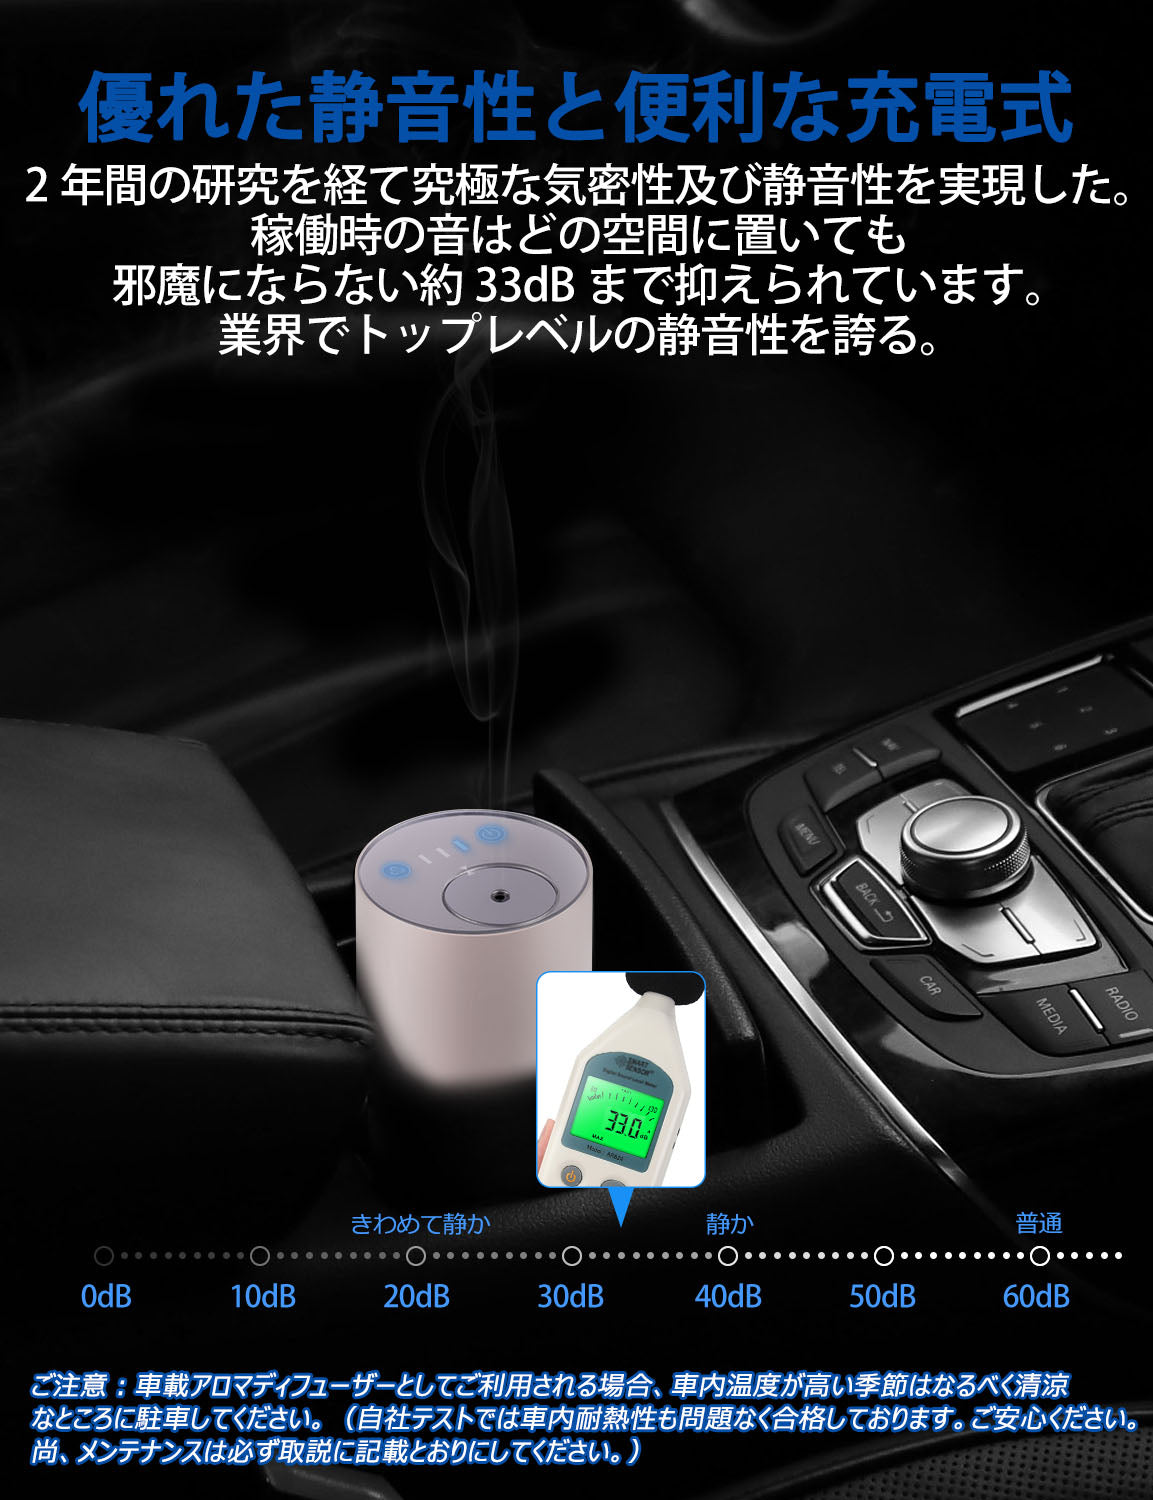 ENERG e's Trip 車載アロマディフューザー充電式 水使わないネブライザー式アロマディフューザー 静音 10m空瓶スポイト付き T11-ENTH